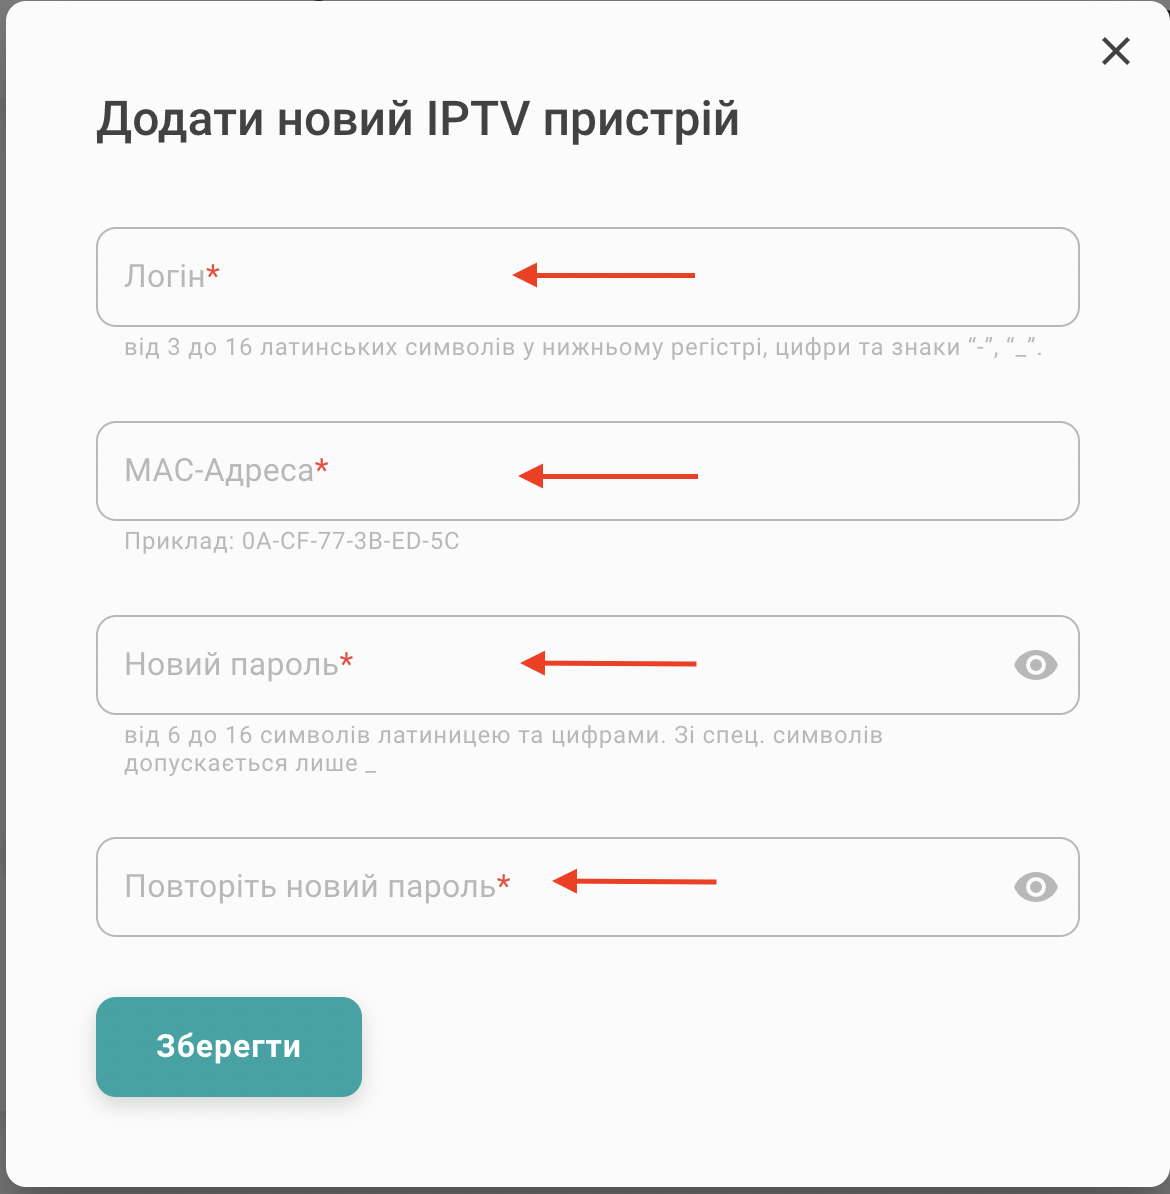 Активація облікового запису IPTV в особистому кабінеті,4 - інтернет-провайдер Briz в Одесі